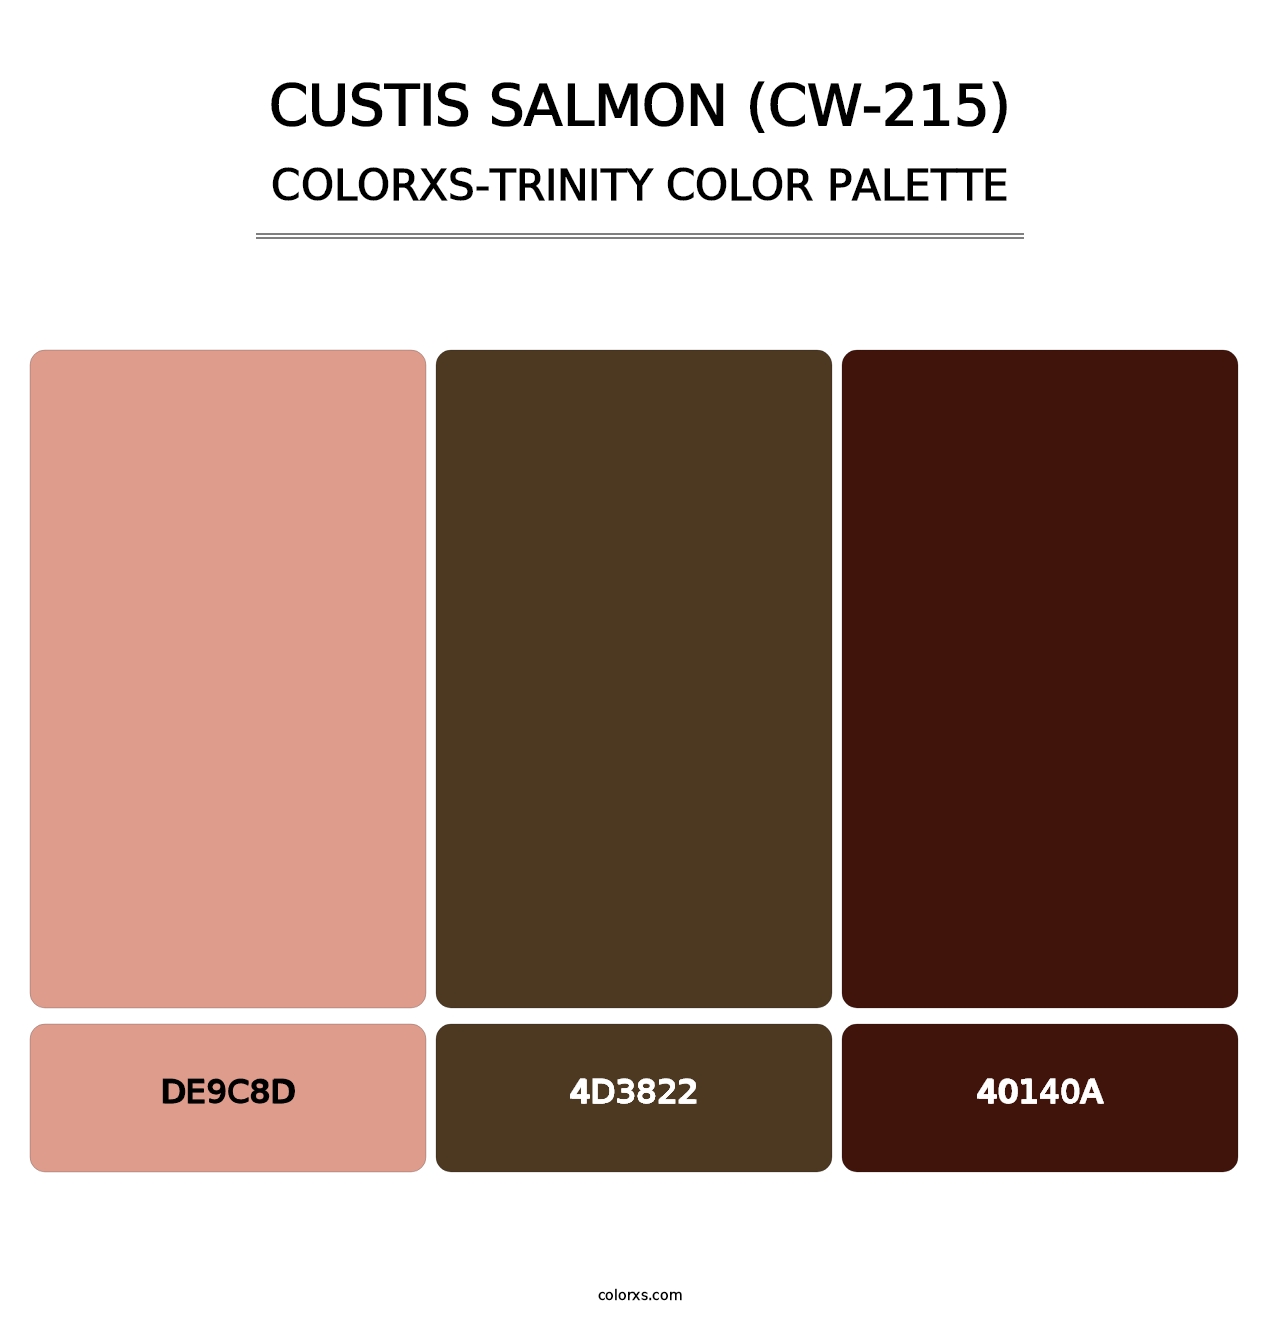 Custis Salmon (CW-215) - Colorxs Trinity Palette